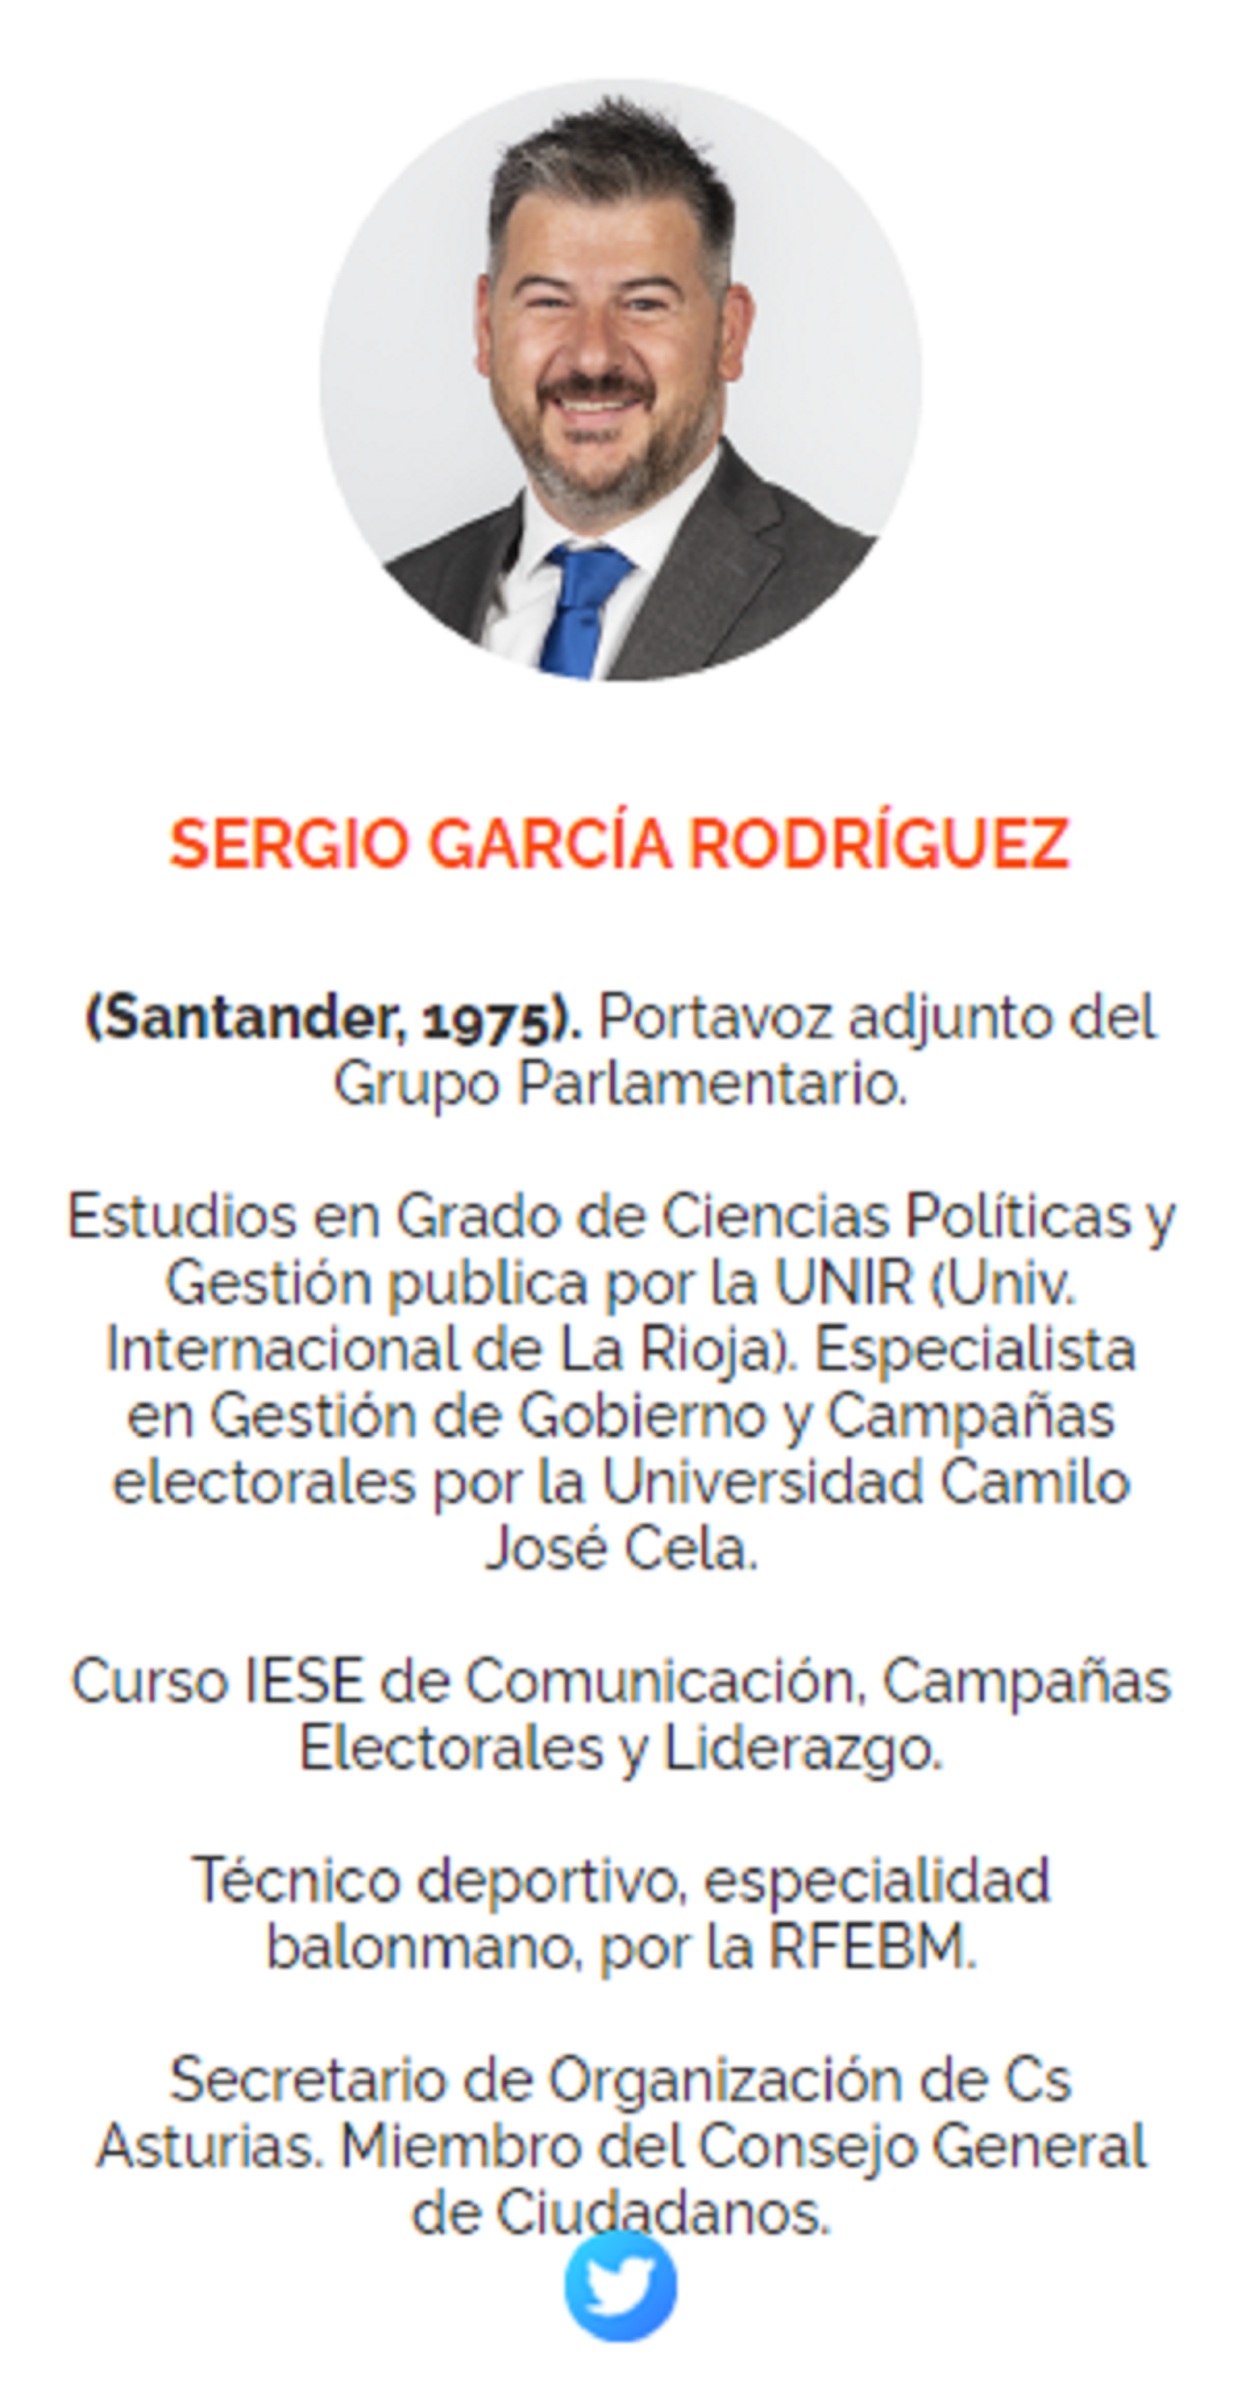 Currículum Sergio García de la web de Cs Asturias